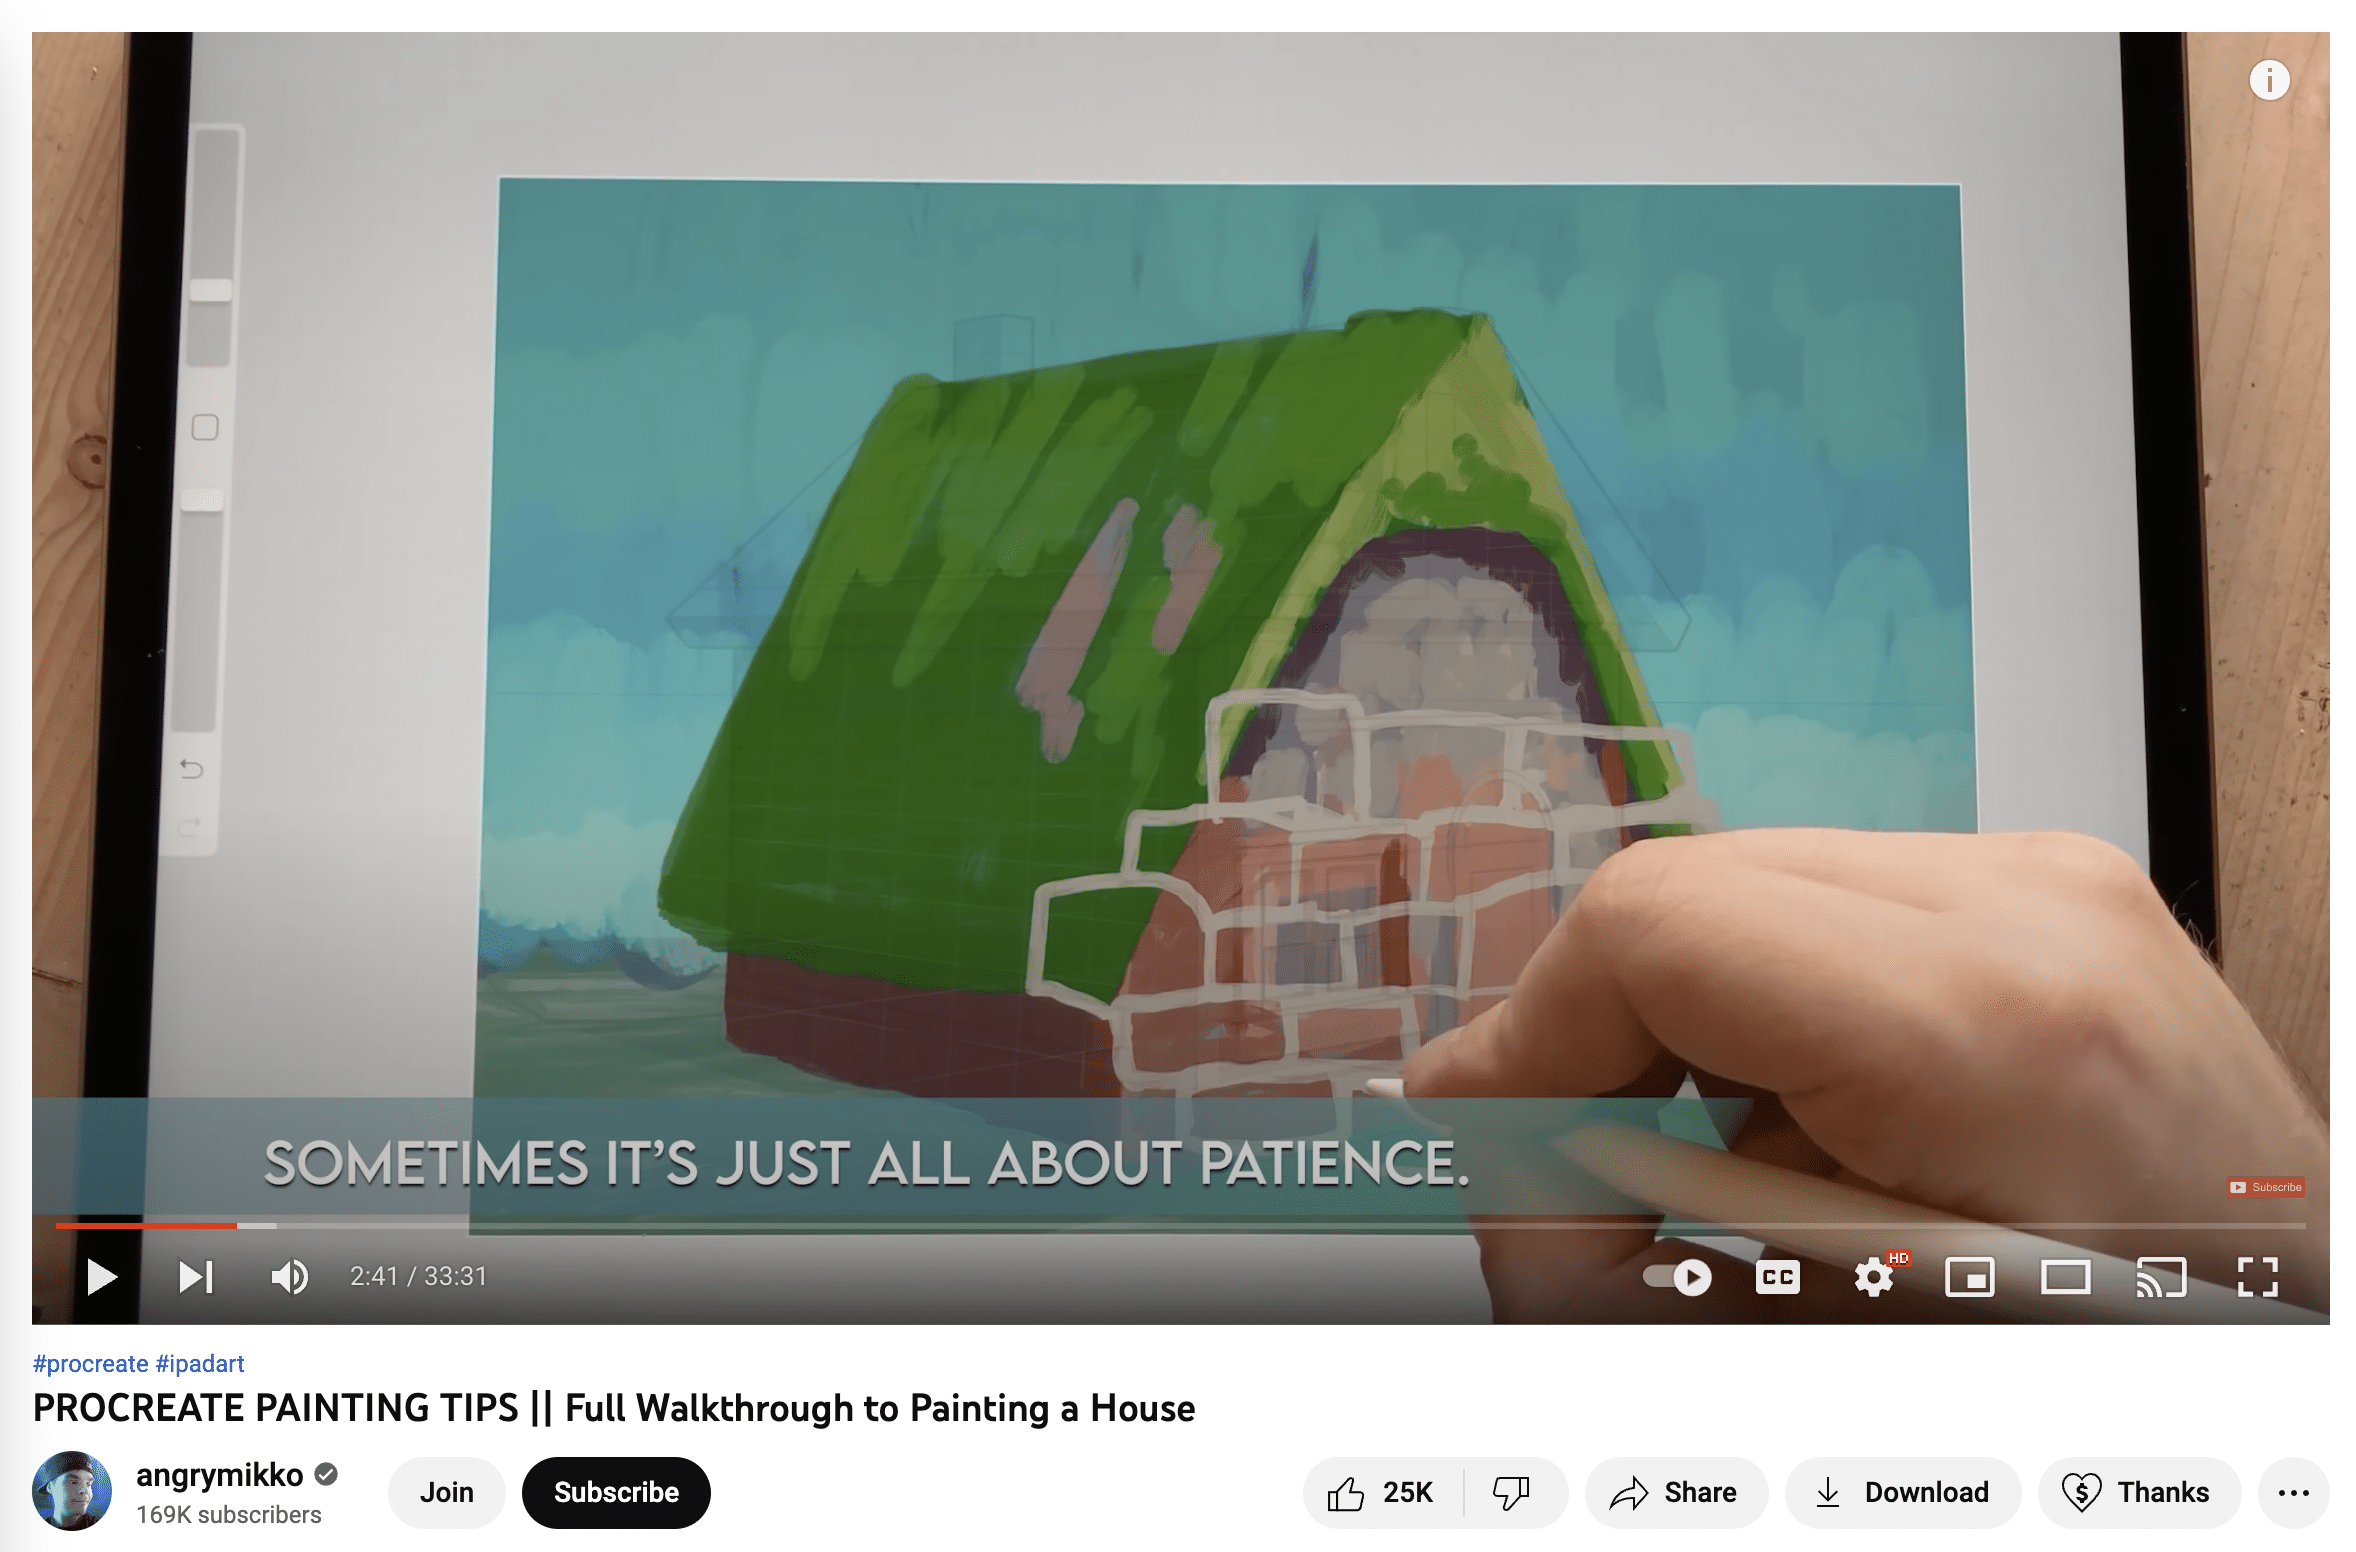 canal de youtube de ilustración de angrymikko que muestra el proceso de procreación de dibujar una casa